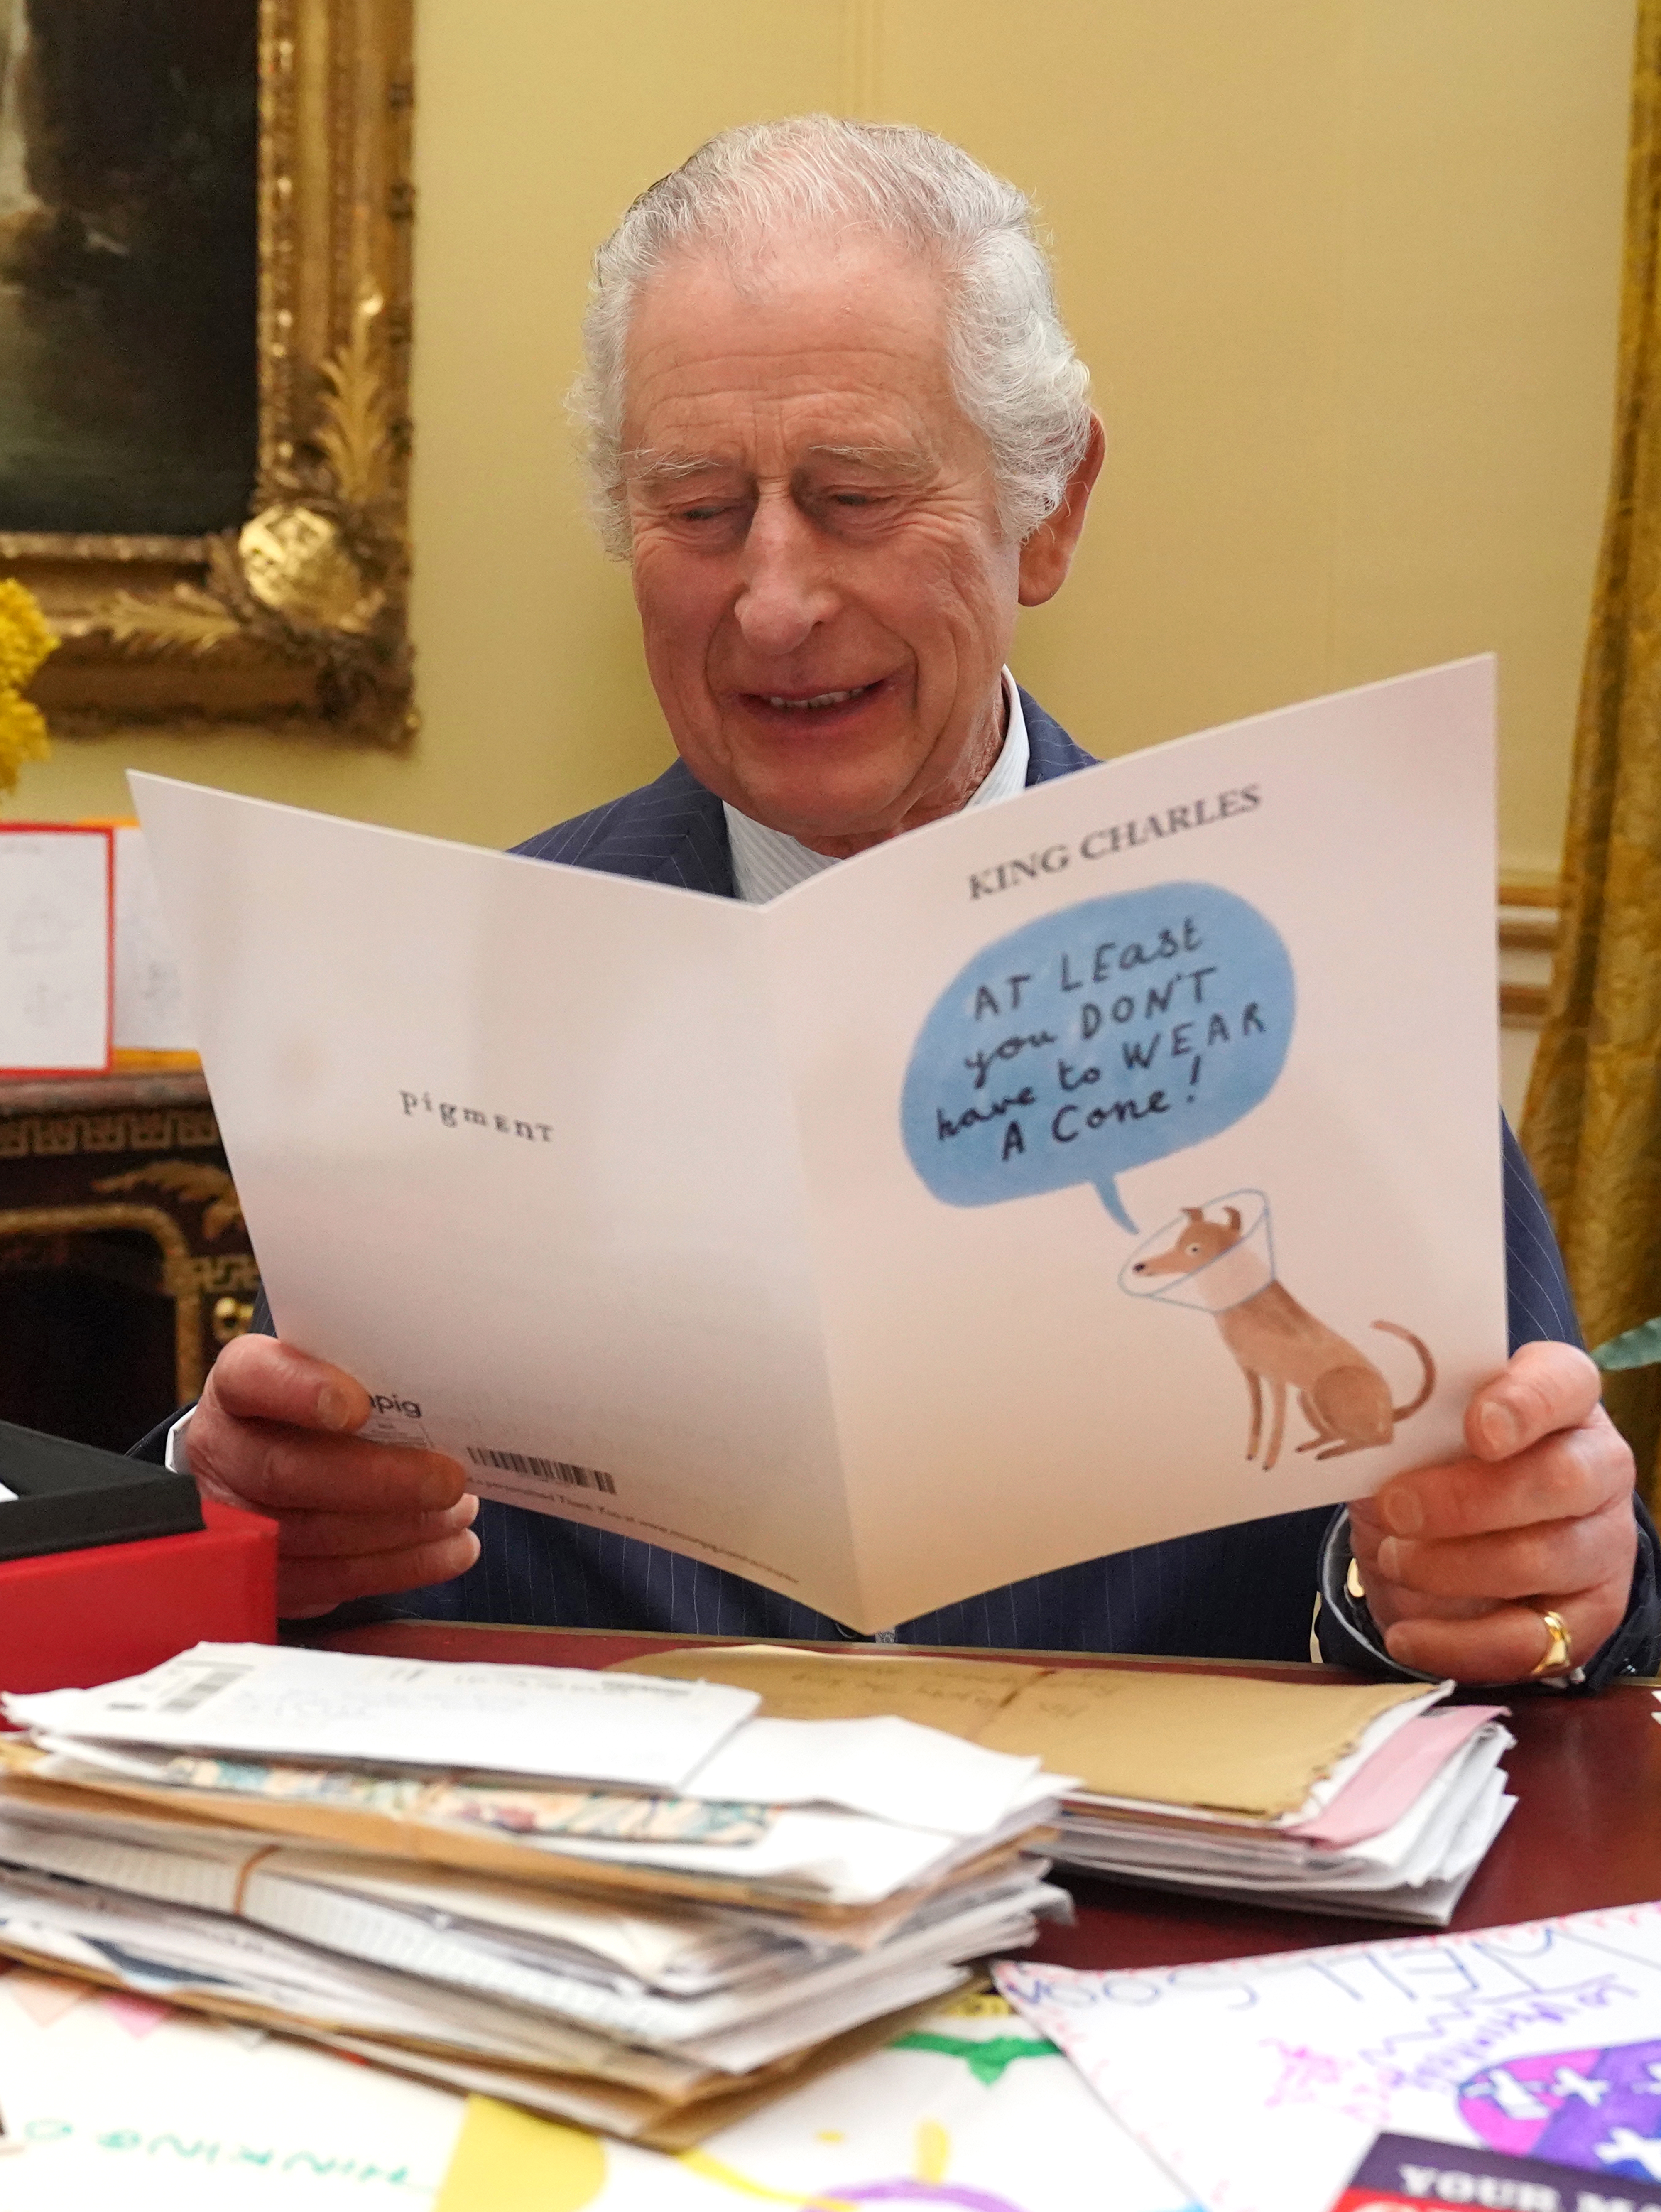 Le roi Charles III lisant des cartes et des messages envoyés par des personnes bienveillantes suite à son diagnostic de cancer, sur une photo publiée le 23 février 202 | Source : Getty Images